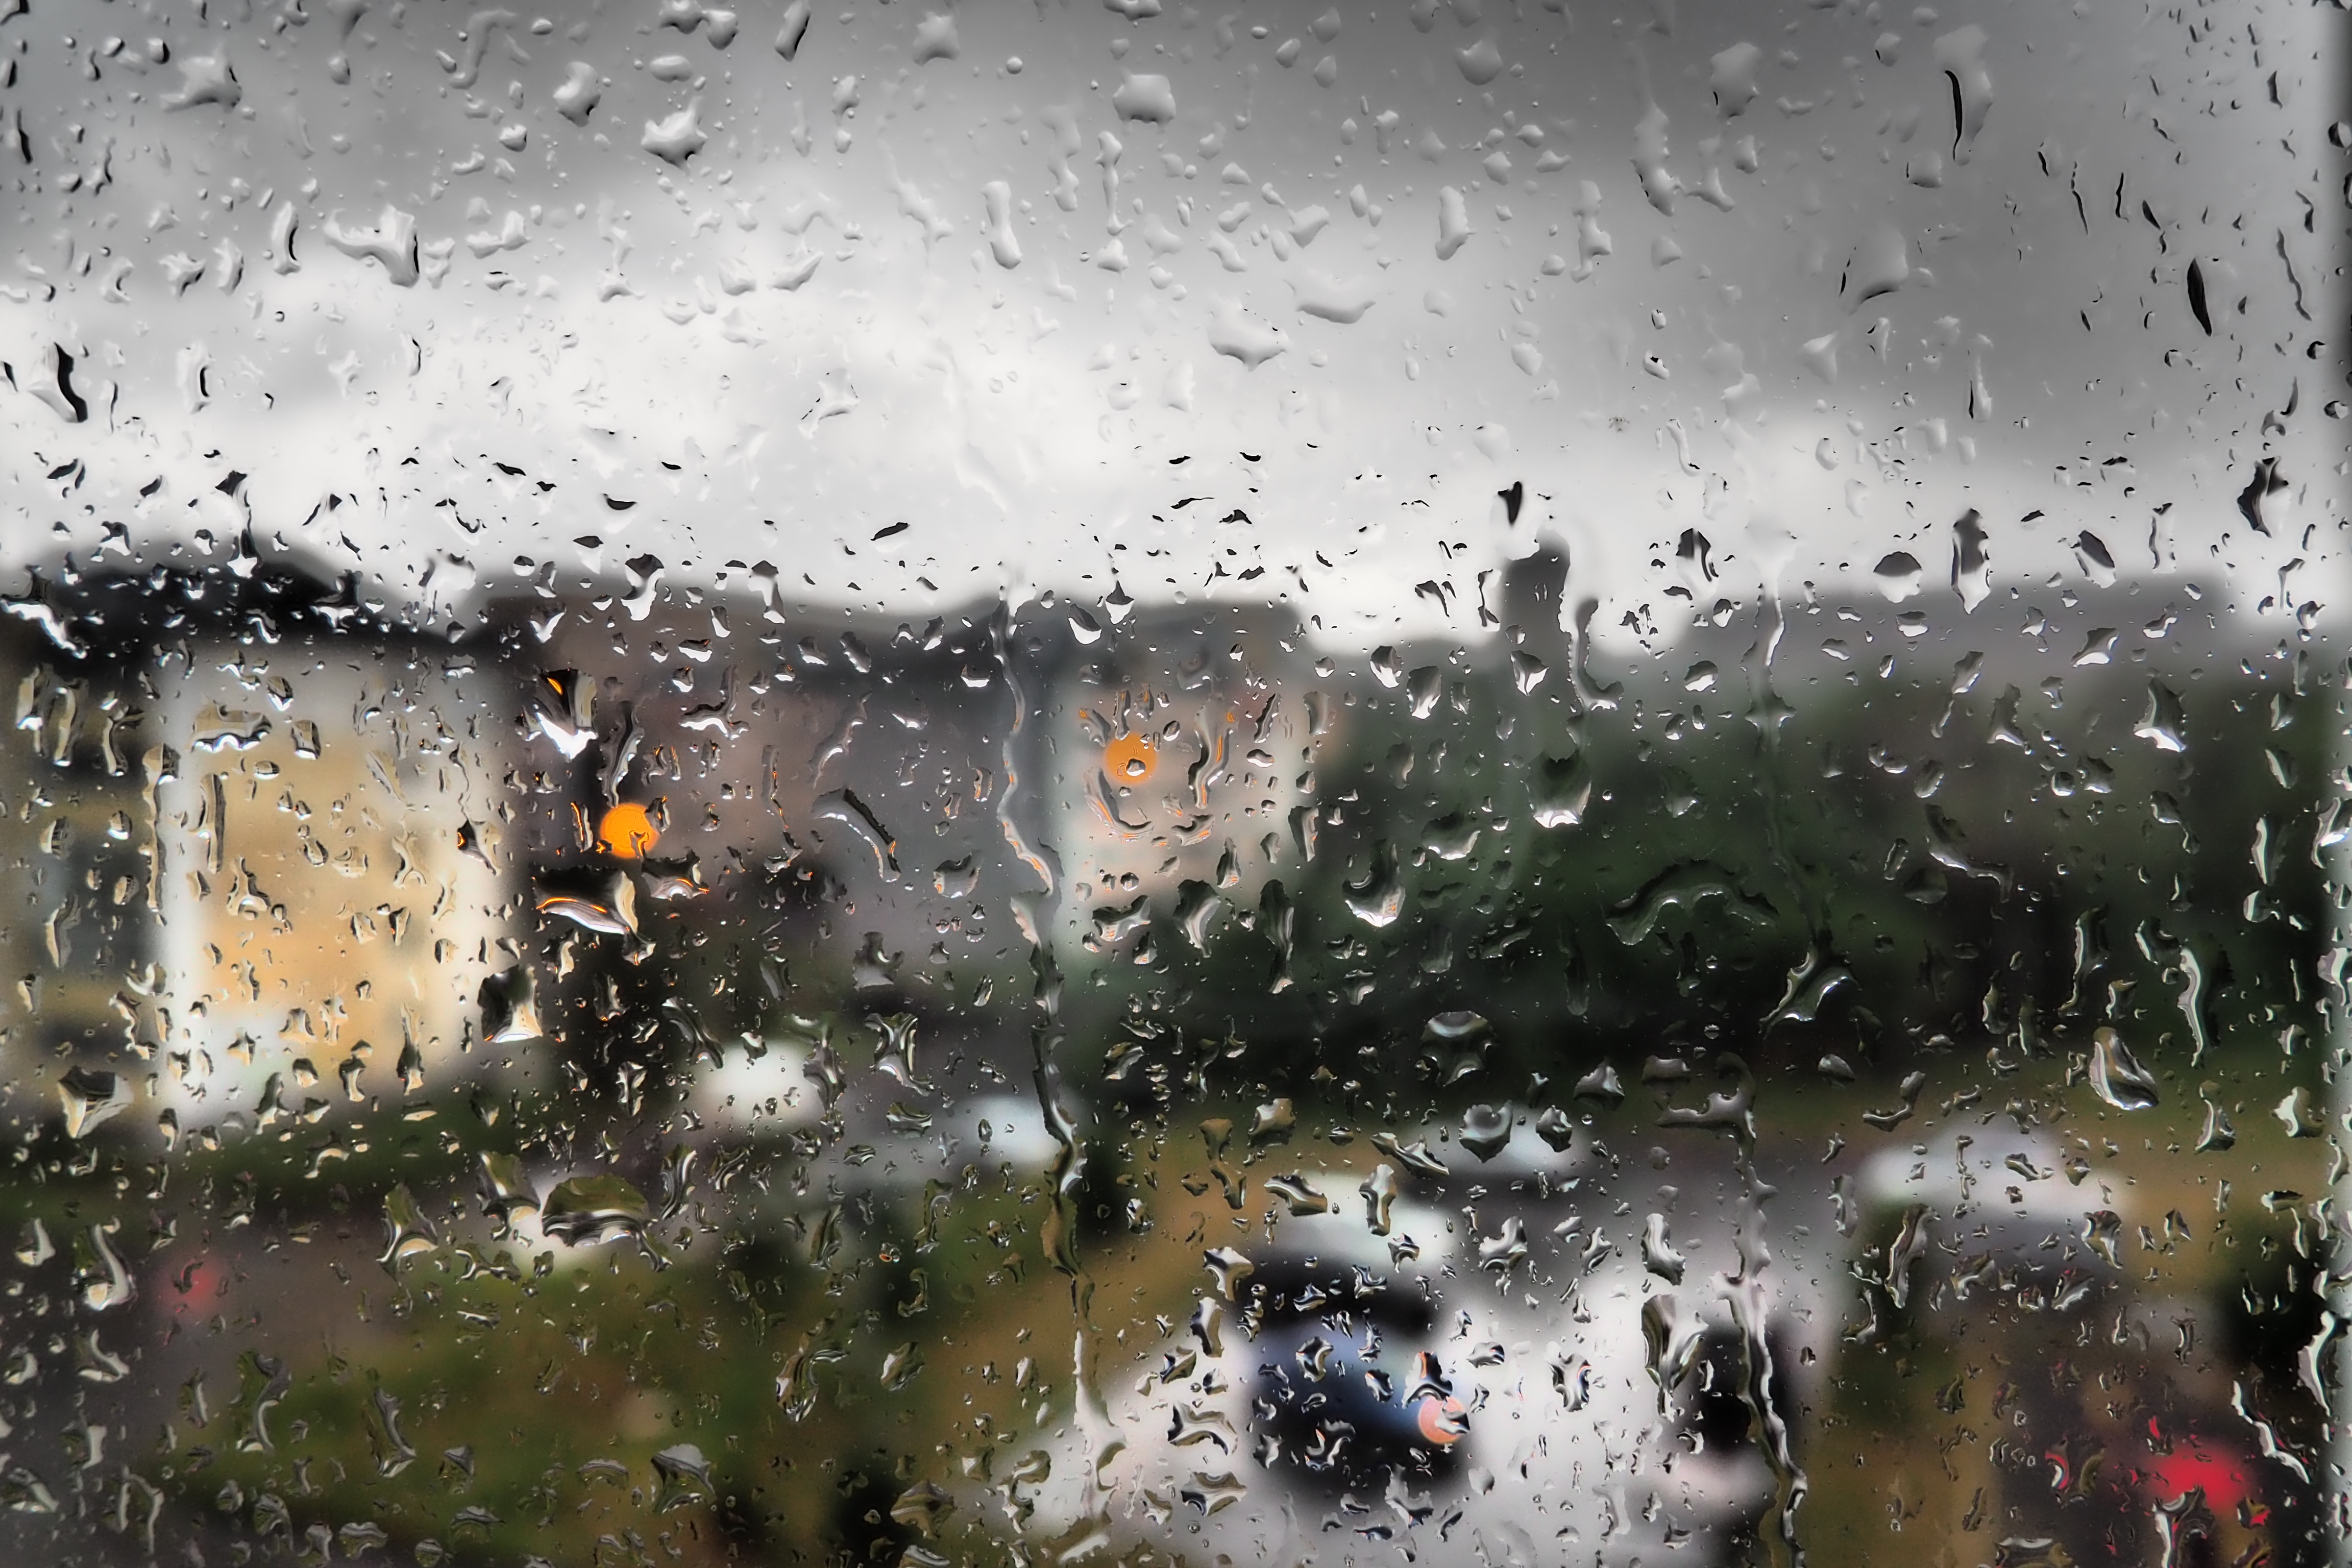 Regn på fönster i stad. Foto: MostPhotos